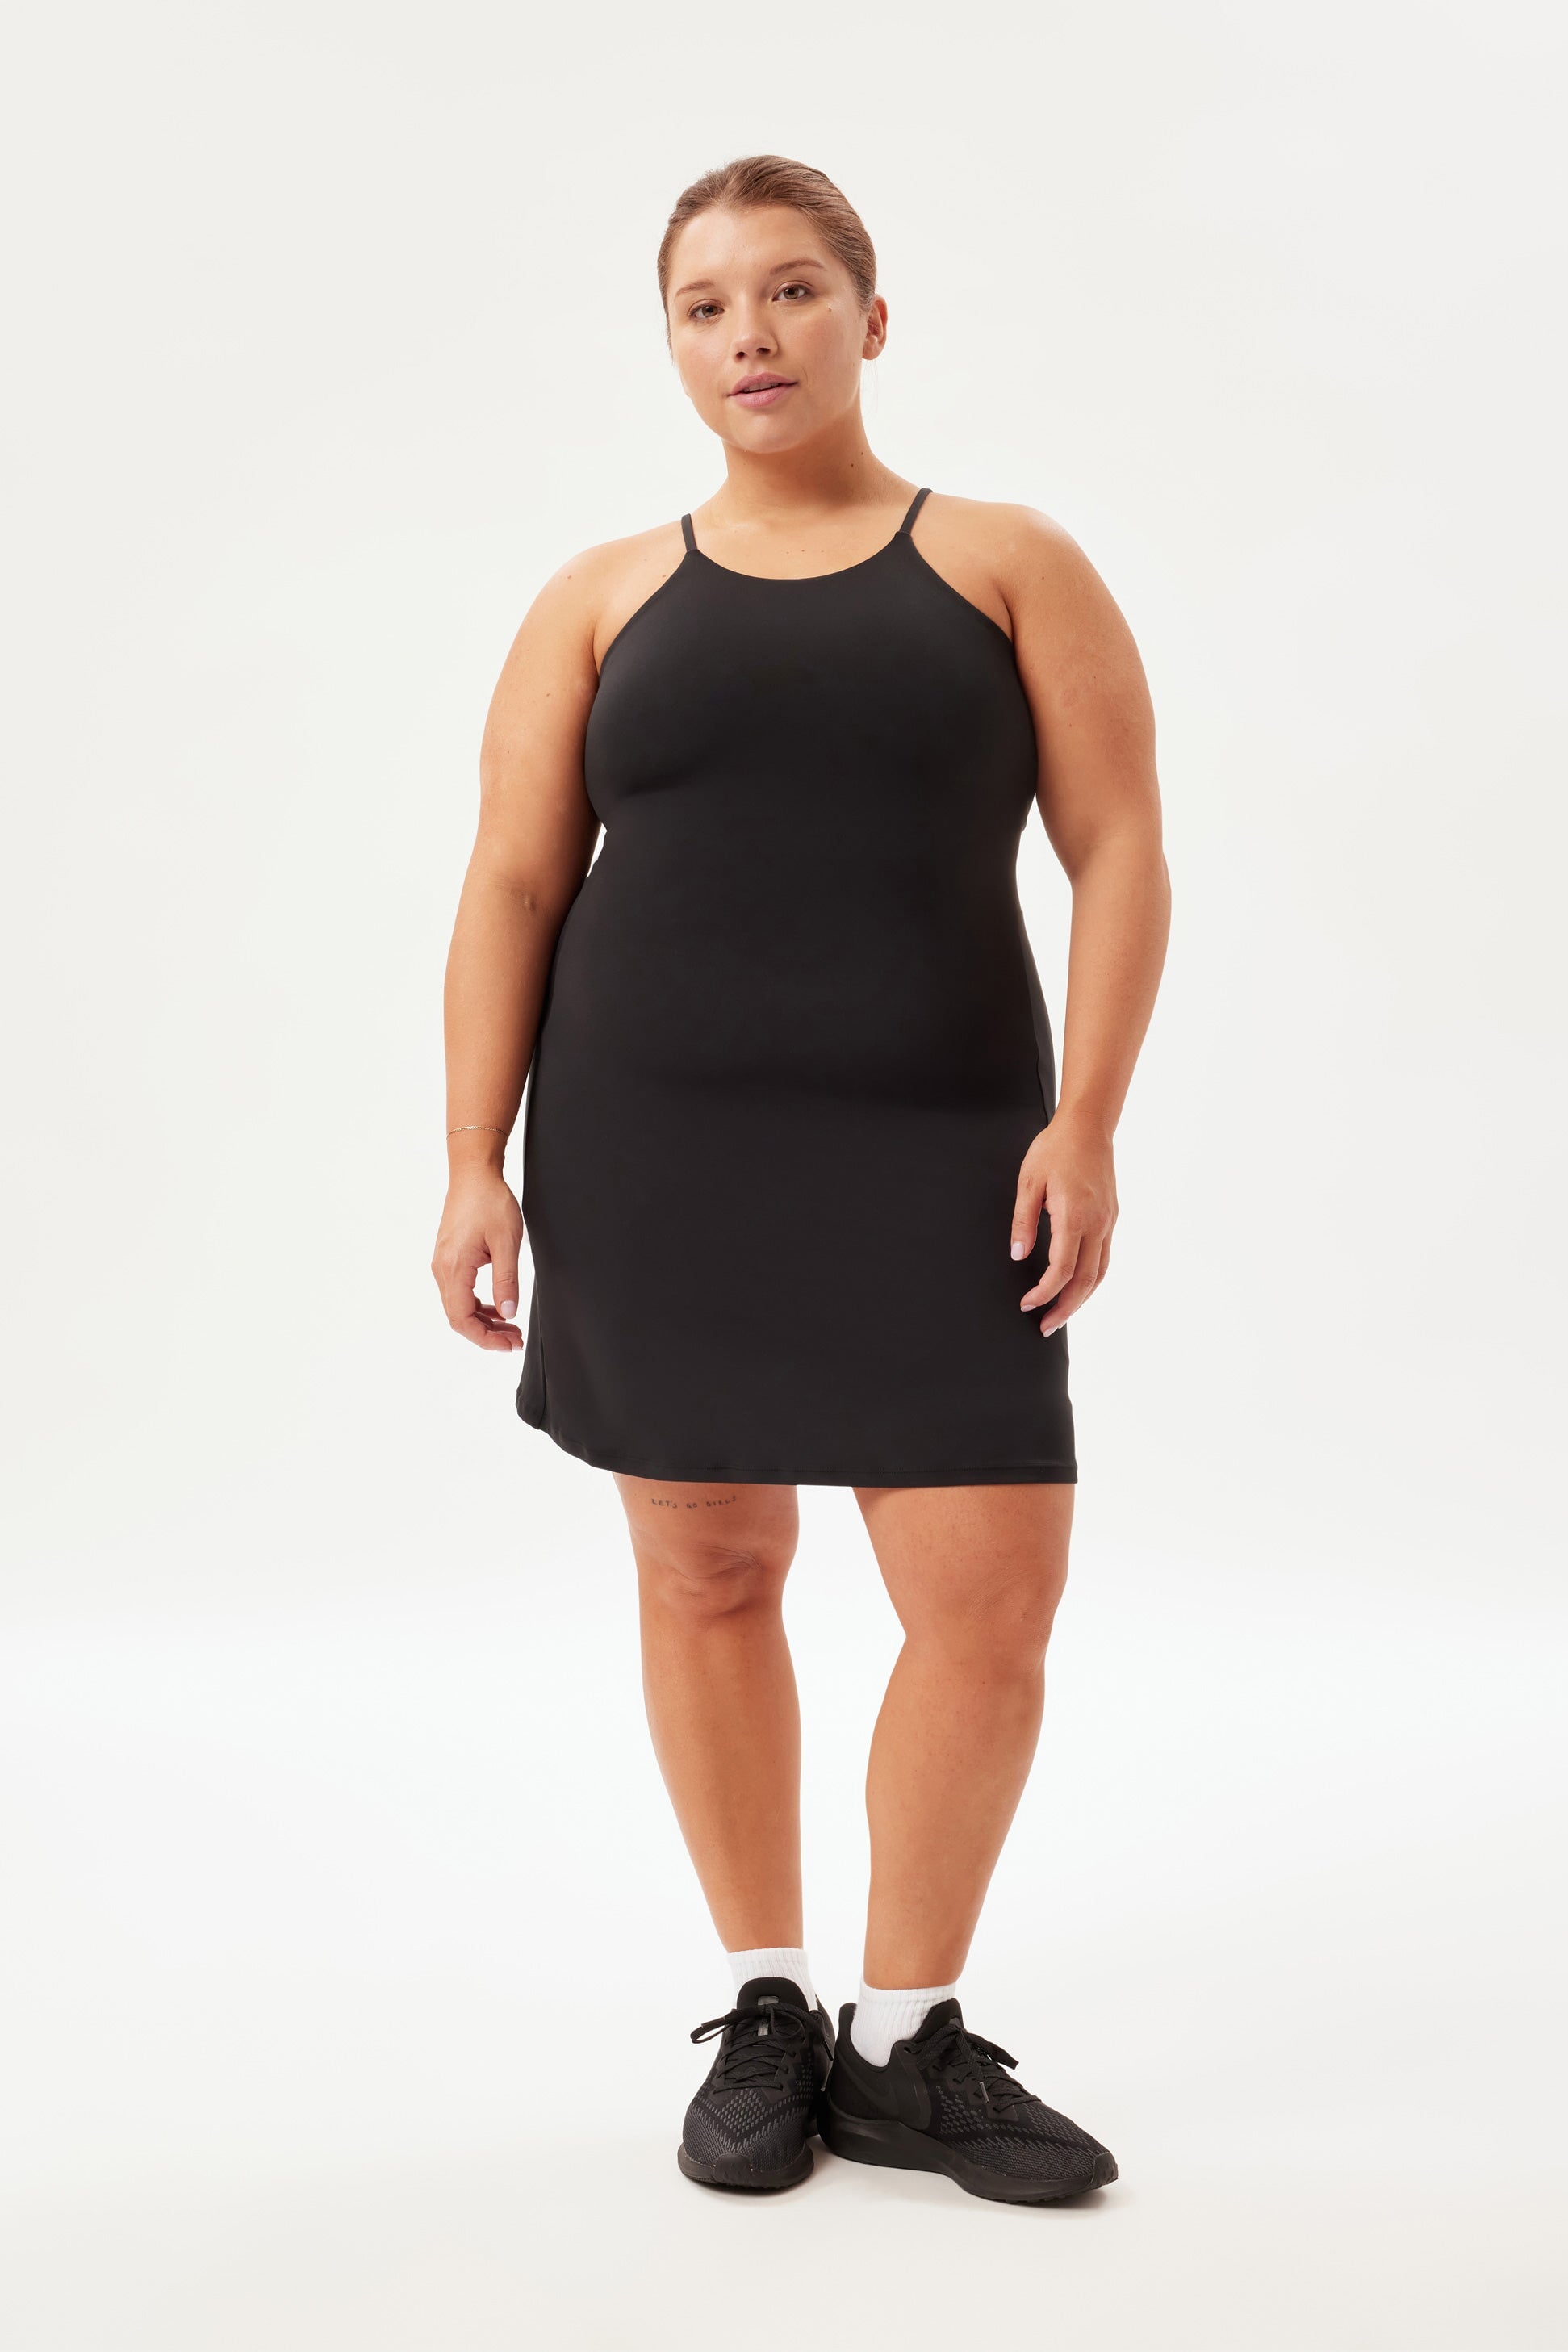 Naomi Plus Size Gown  Evening dresses plus size, Plus size gowns, Designer plus  size clothing